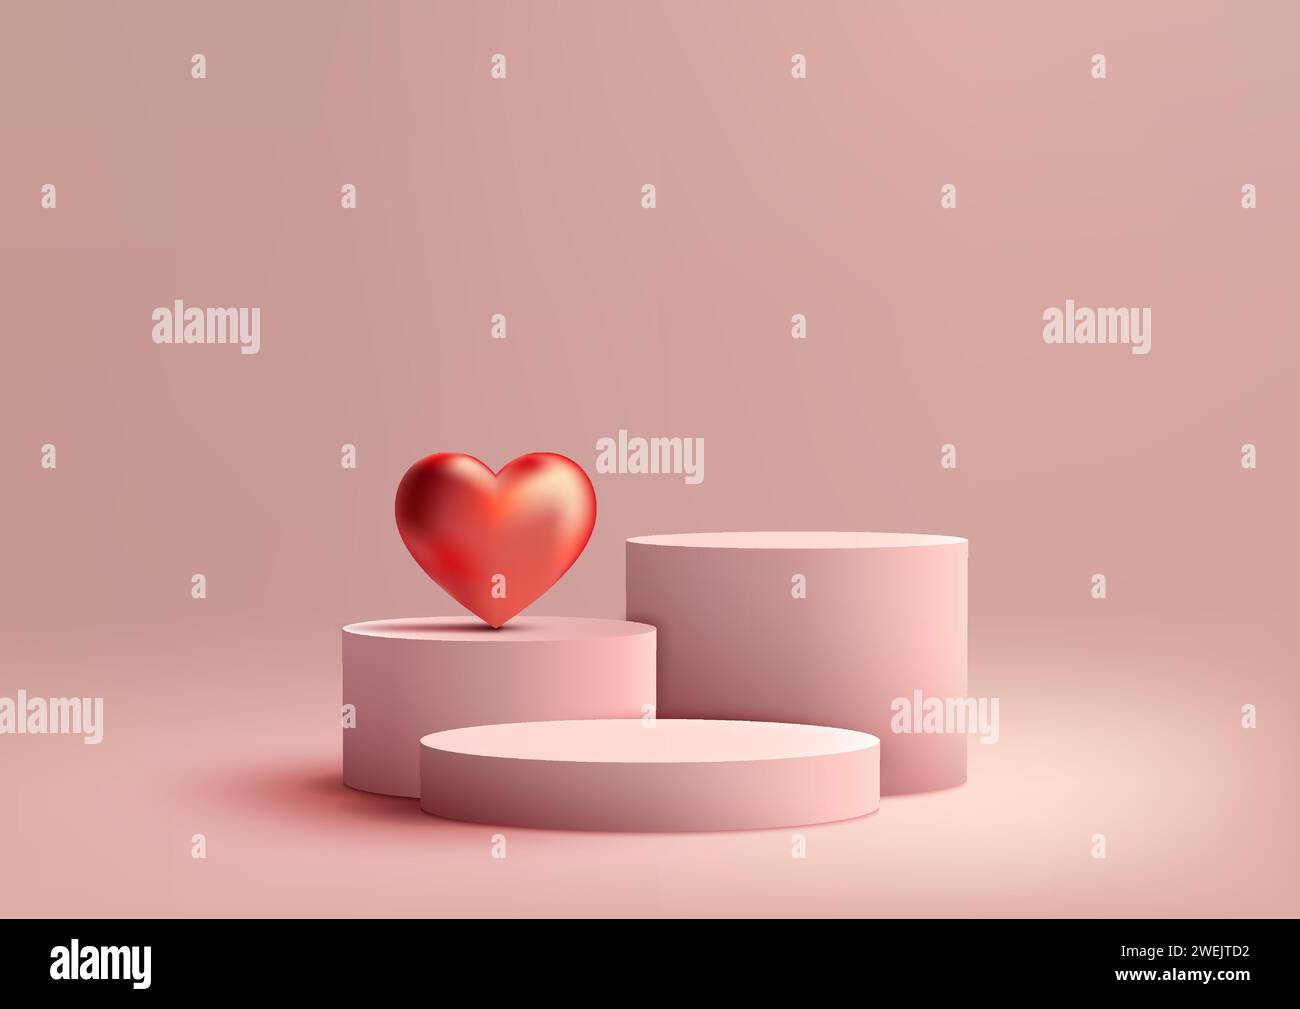 San Valentino in mostra con questo modello 3D rosa su podio. Elementi lucidi a cuore rosso con sfondo rosa tenue, perfetti per presentare prodotti, marchi, Illustrazione Vettoriale